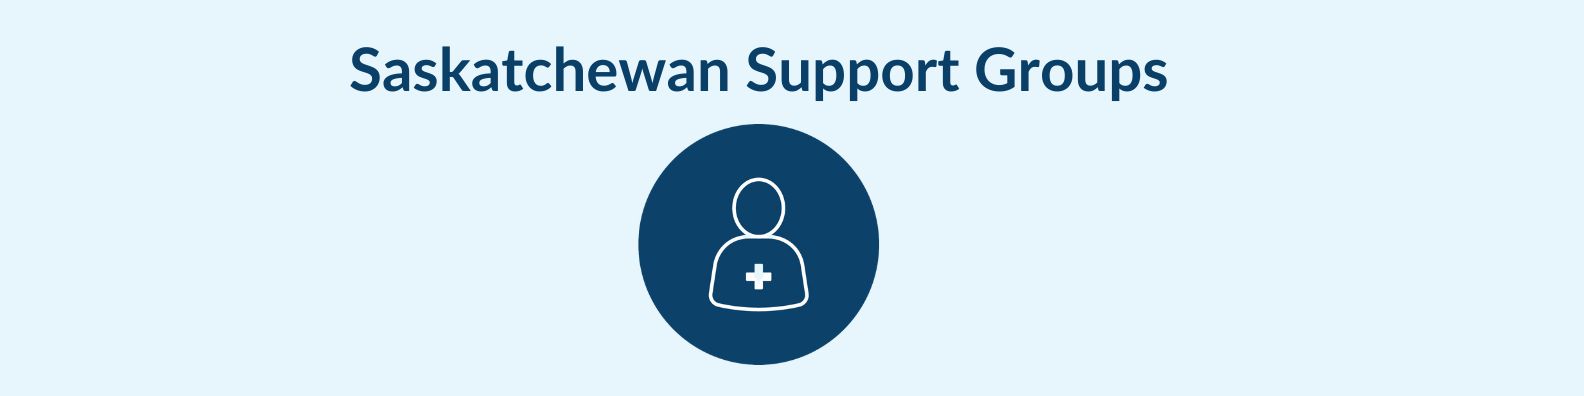 Saskatchewan support groups banner 2